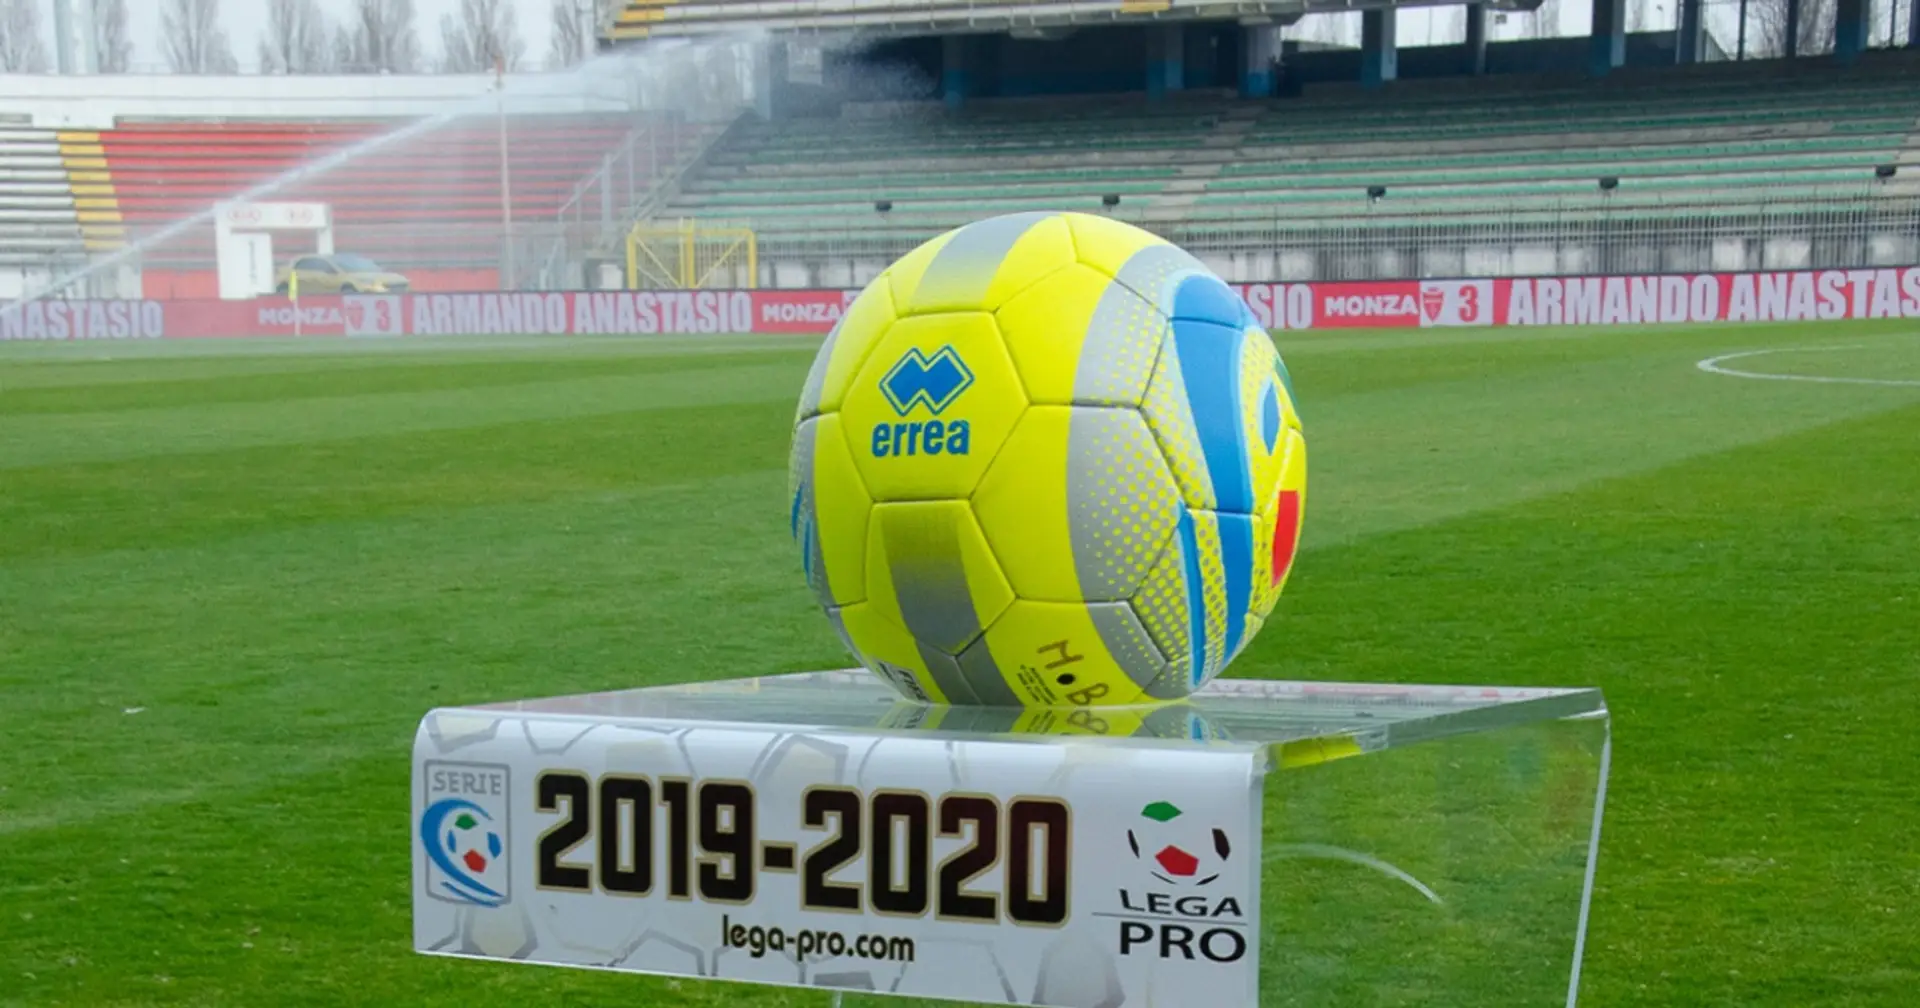 La Lega Pro dice basta, Campionato annullato! Nessuna retrocessione e 4 squadre promosse in Serie B